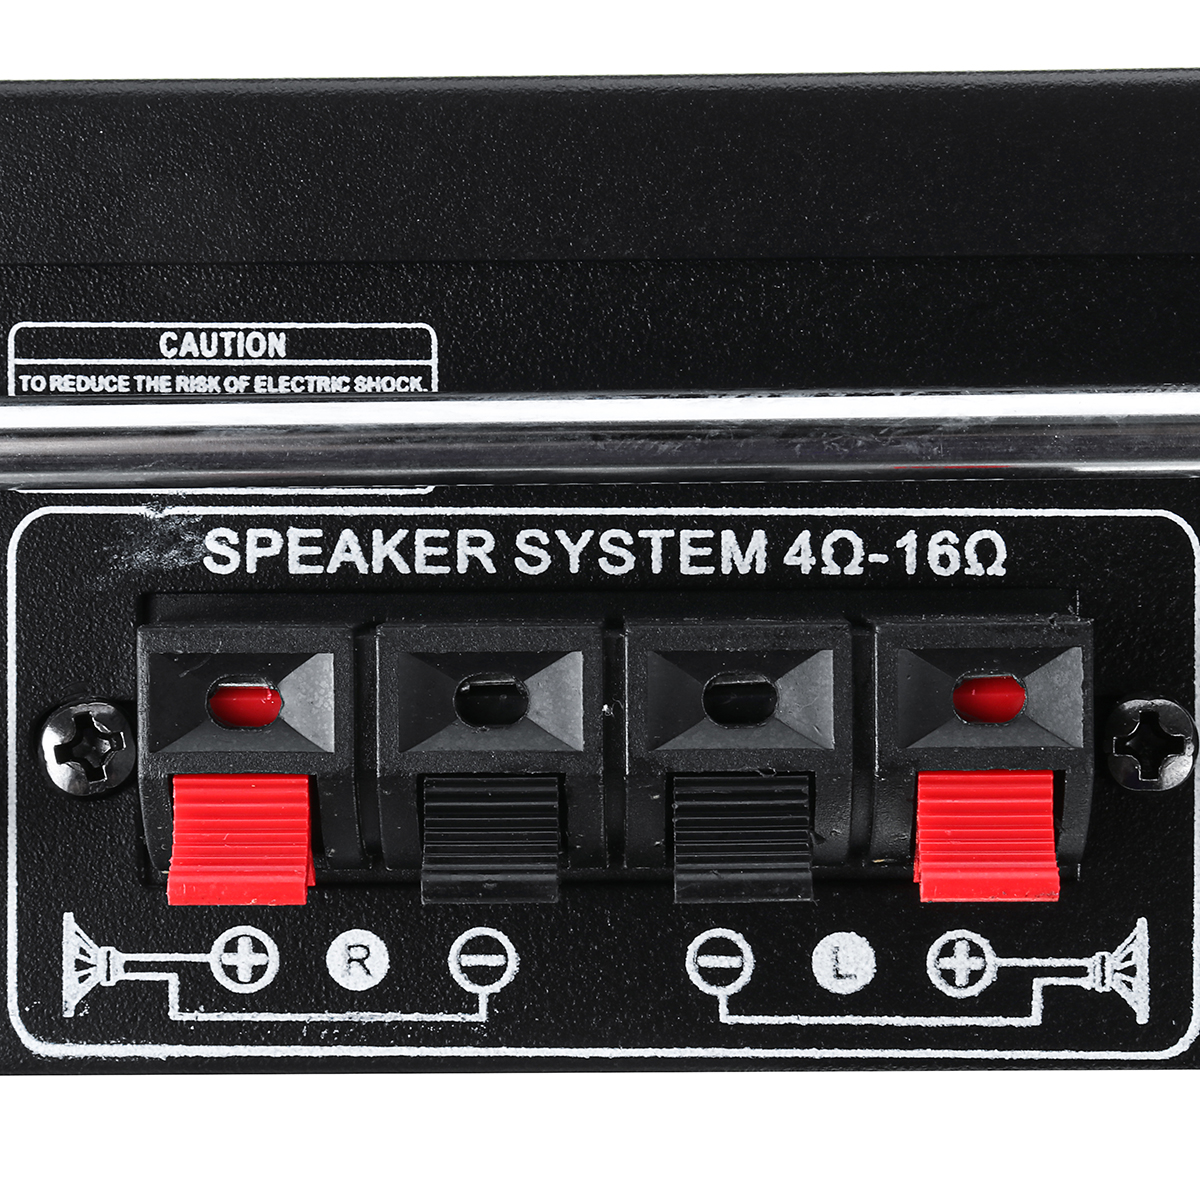 BT-198A 300W+300W Power Car Amplifier HIFI Digital Audio Bluetooth AMP FM Radio for Car/Home/Theater